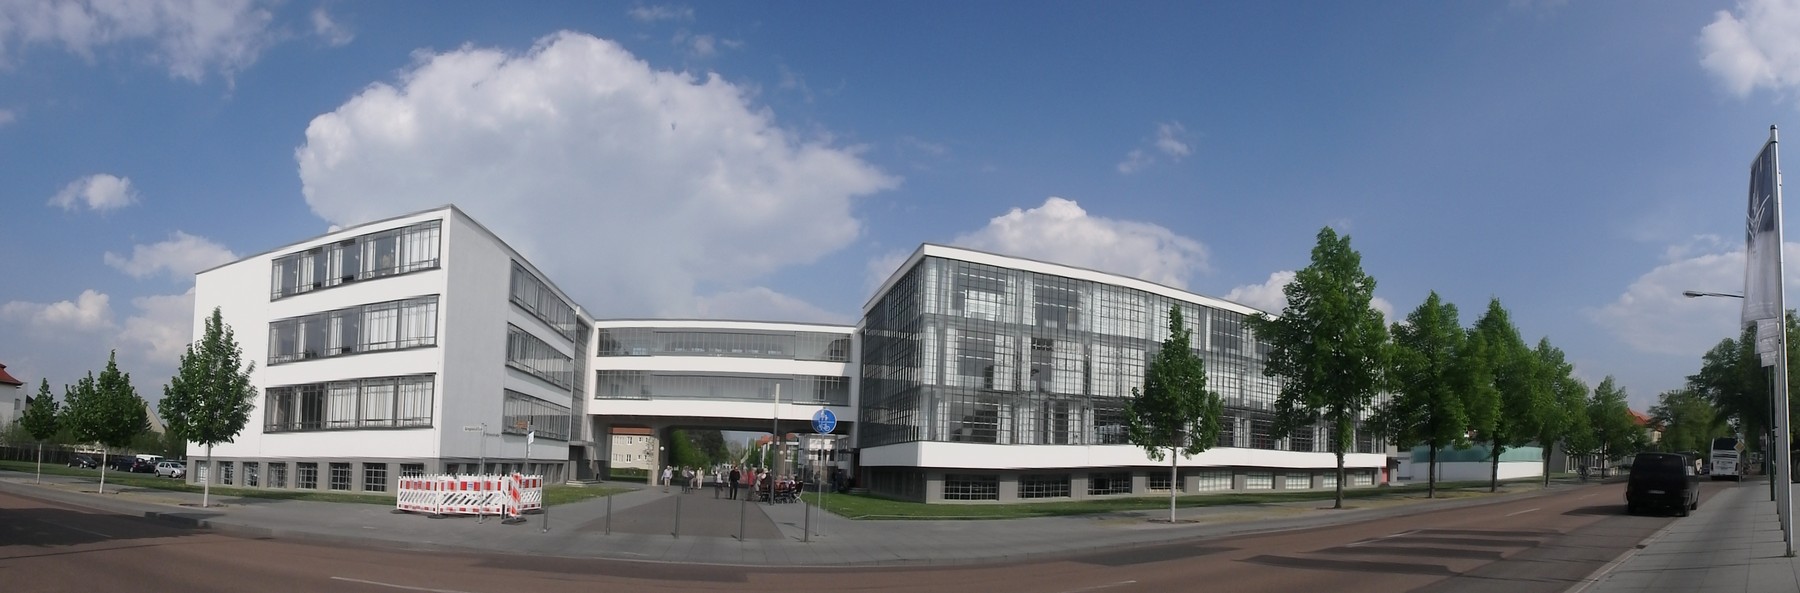 P4230093 Pano Dessau Bauhaus Unesco Alemania